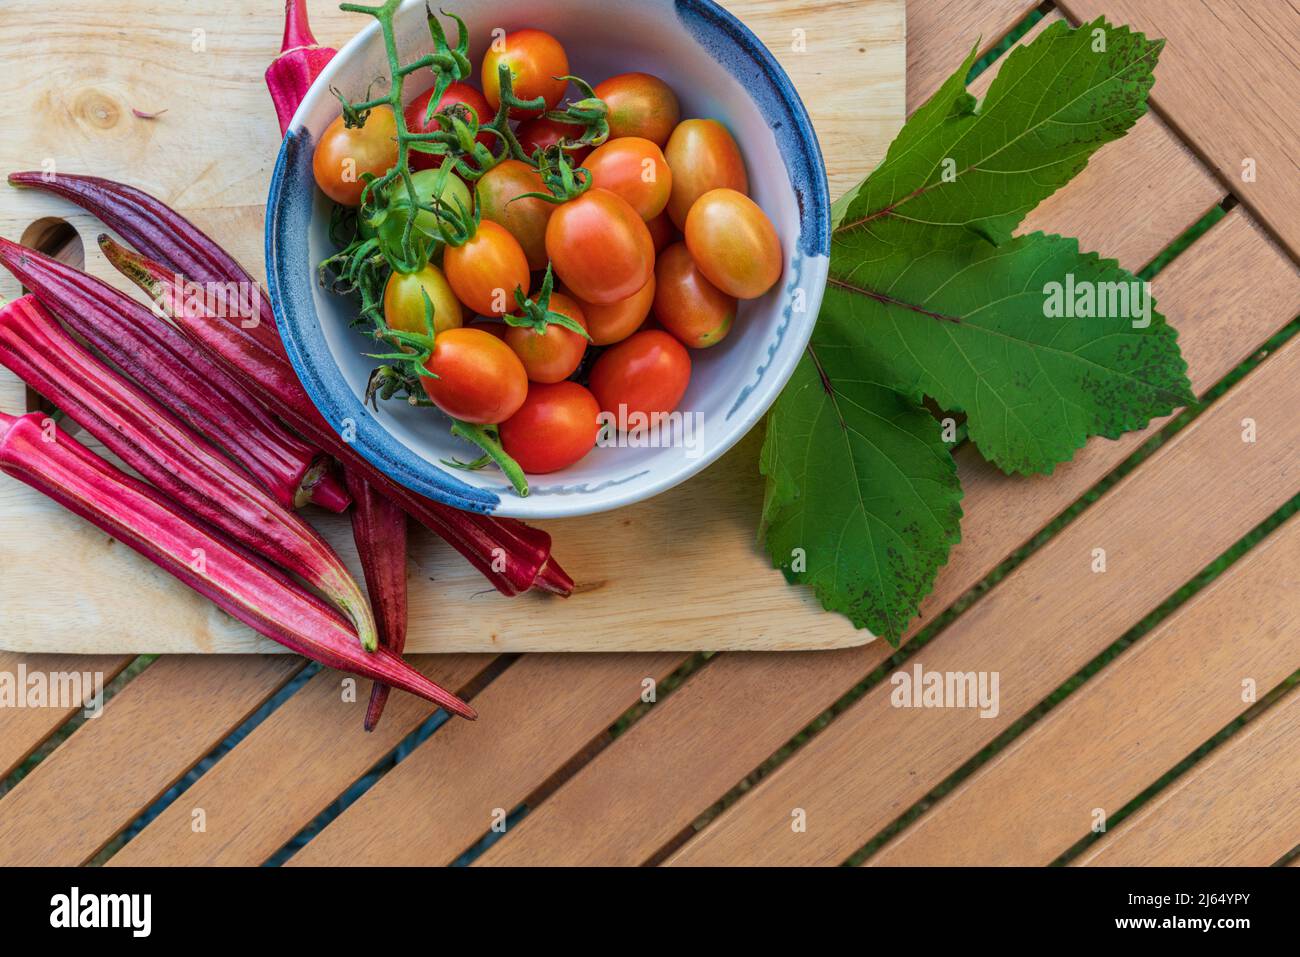 Des gousses d'okra orange Jing récemment récoltées et des tomates raisins plates reposent sur une table extérieure. Banque D'Images